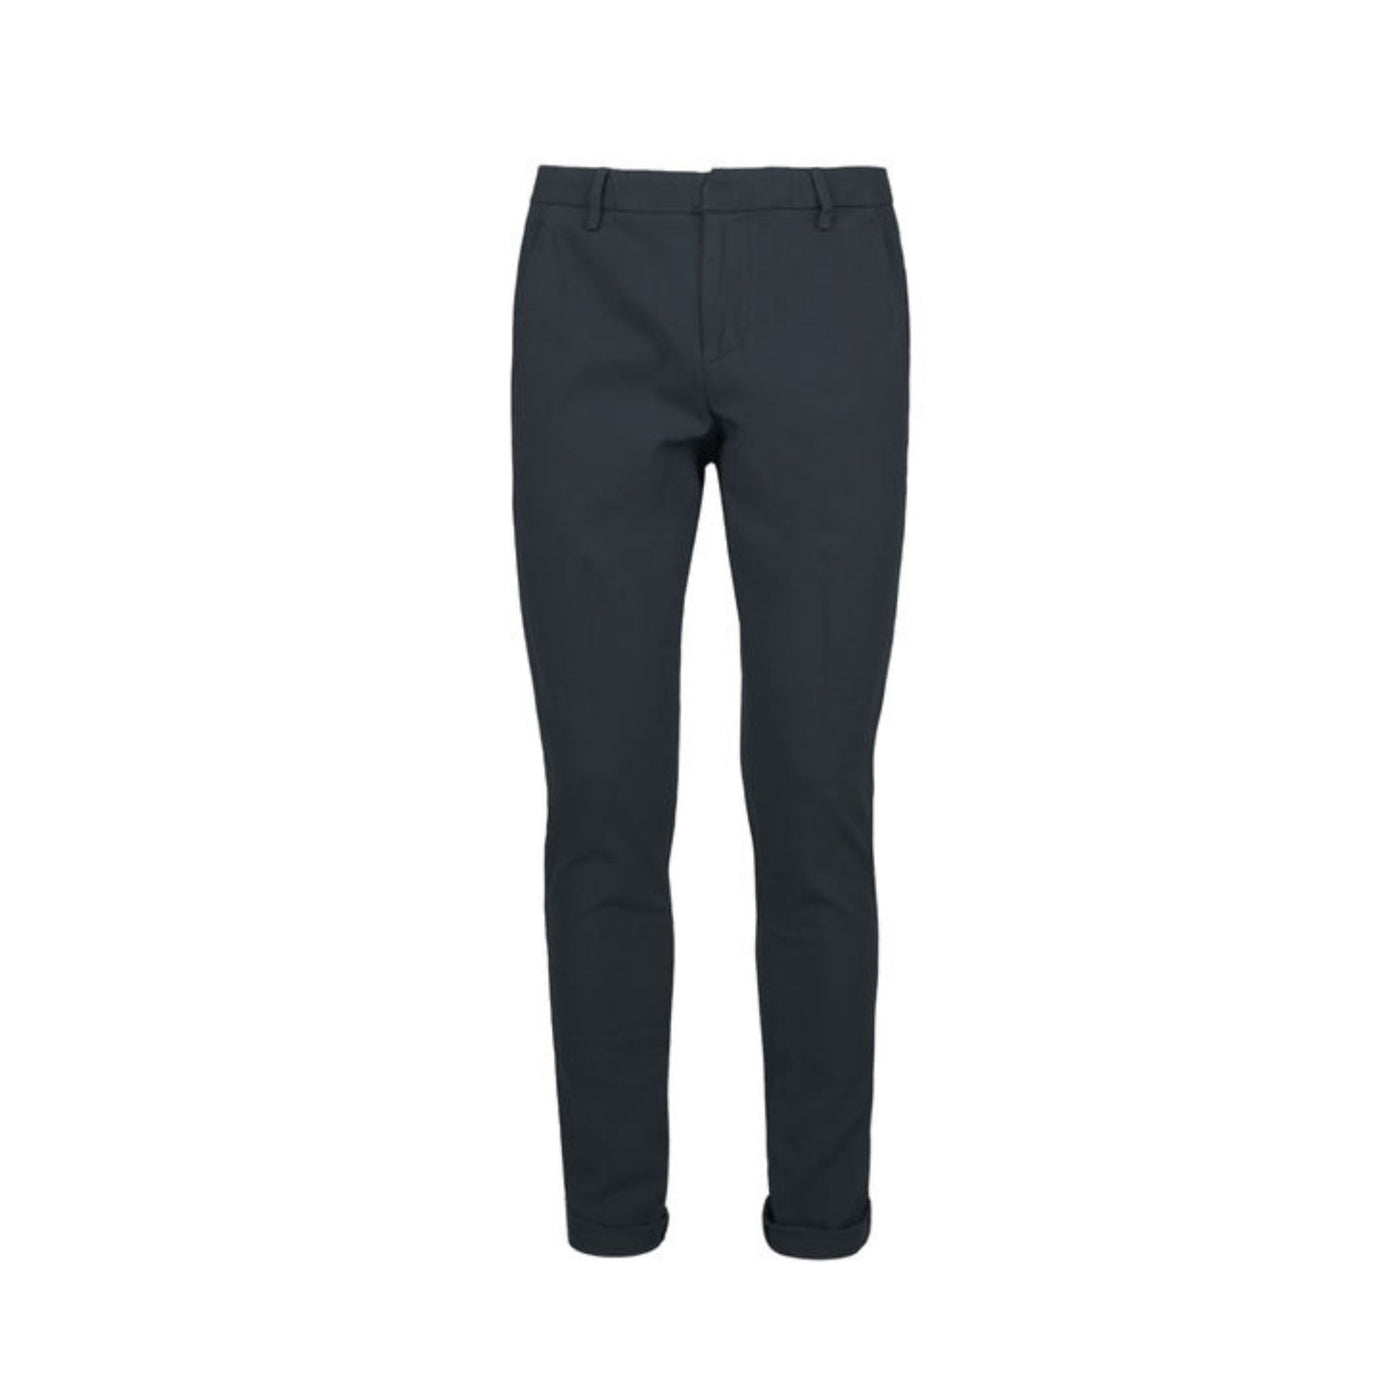 Pantalone in cotone elastan con tasche, chiusura con zip e bottone e passanti per cintura